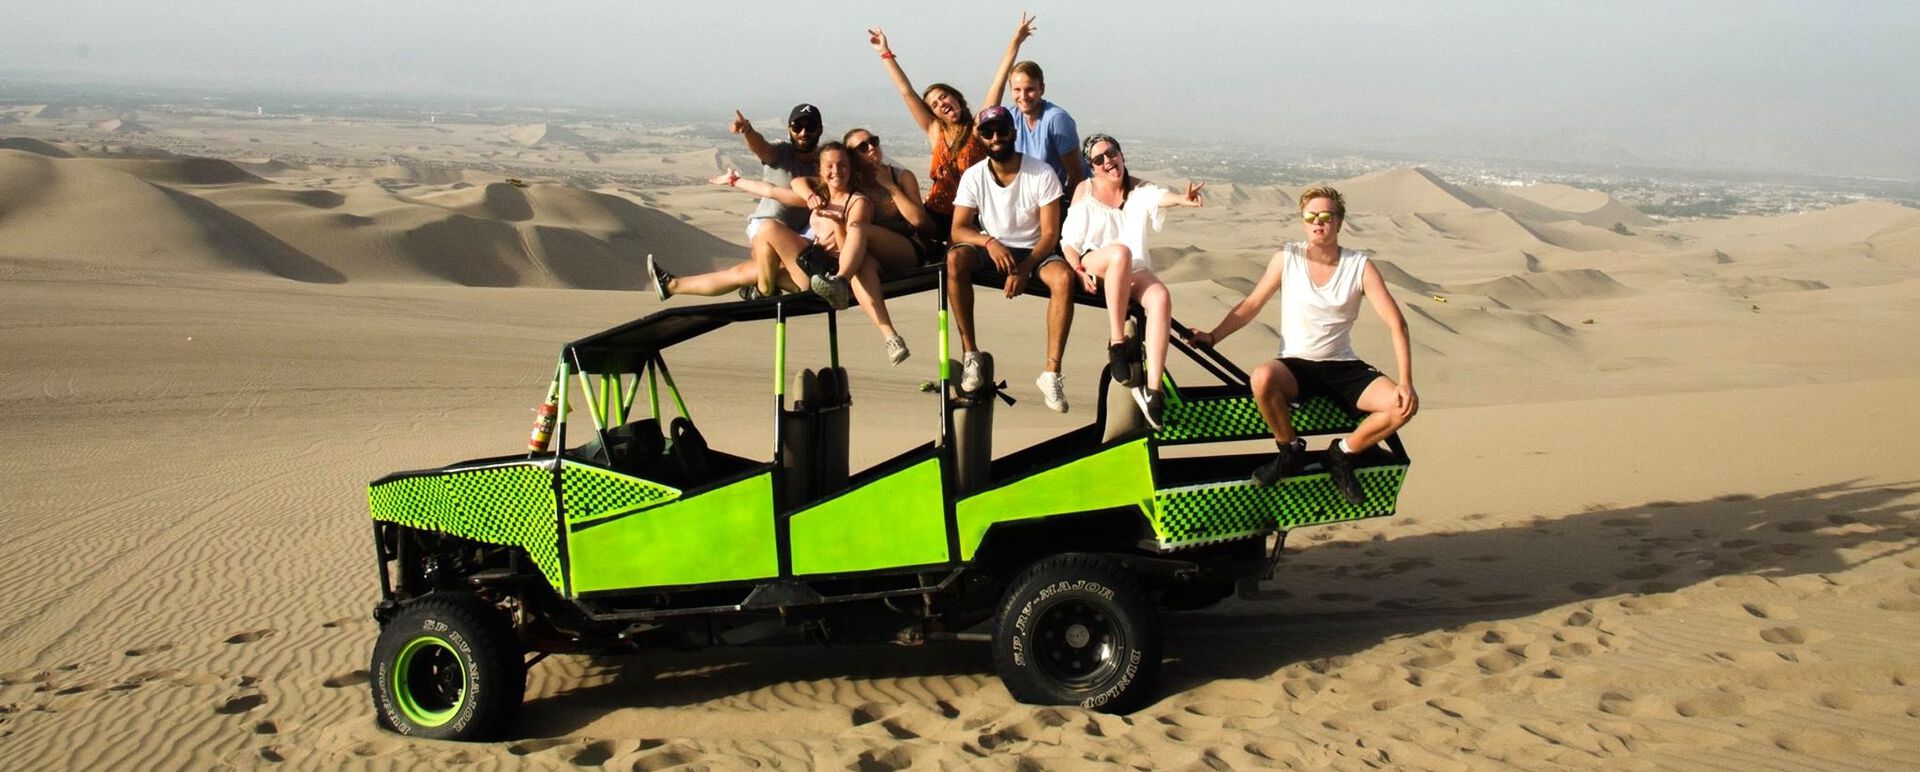 8 studenter sitter på et åpent kjøretøy i et ørkenområde.